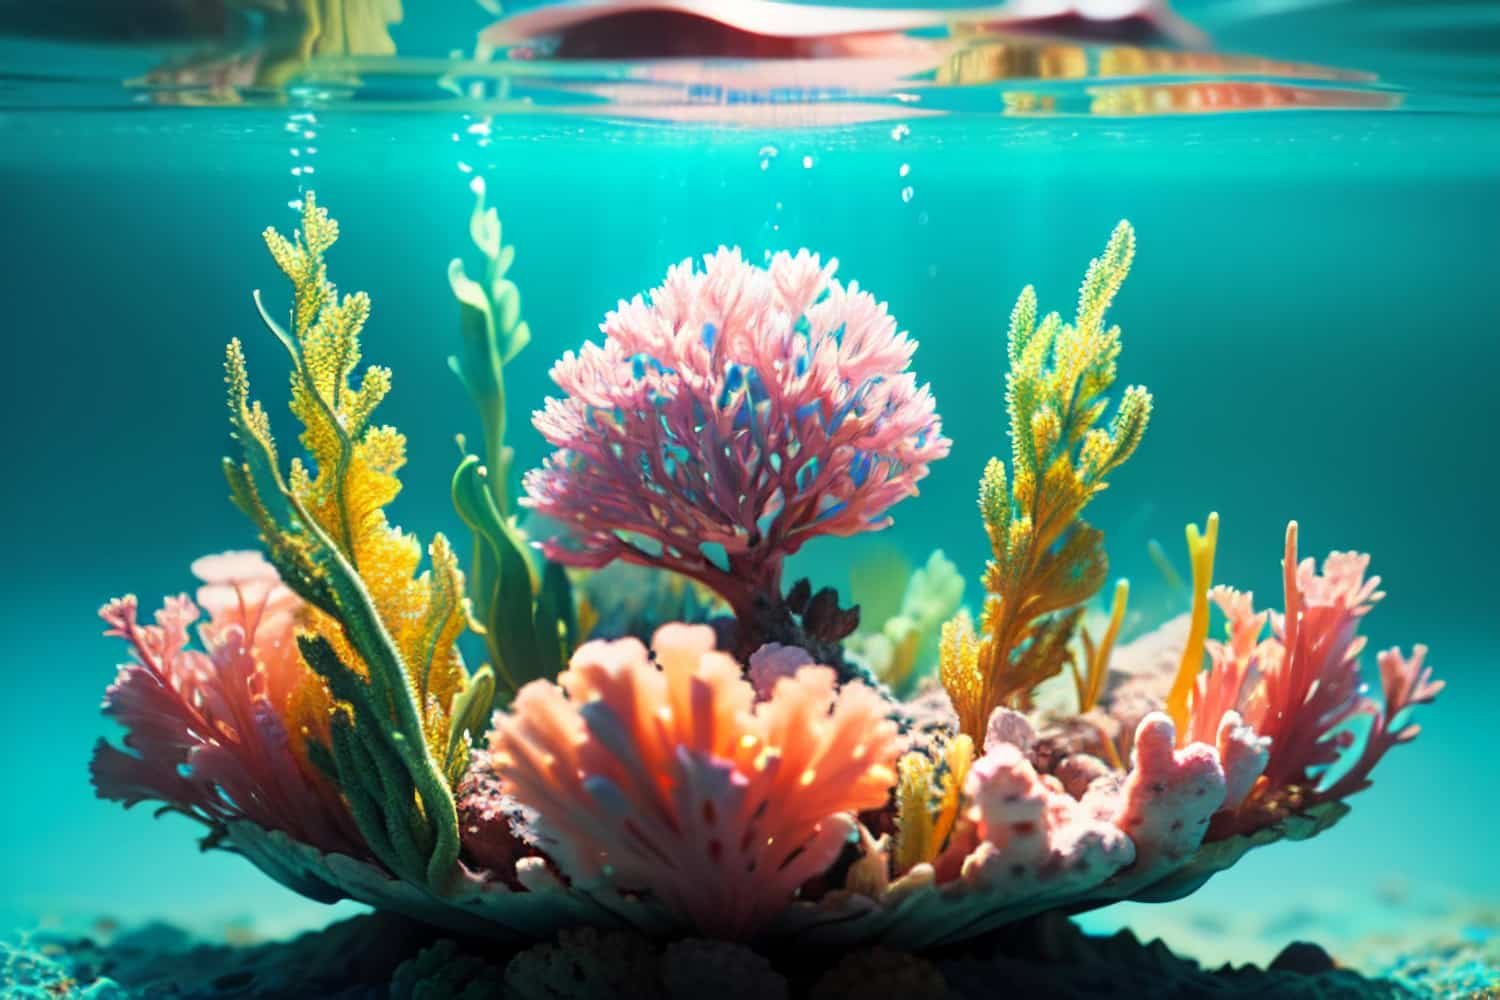 Arrecife de coral vibrante y diverso en los océanos, símbolo de la belleza y fragilidad de estos ecosistemas marinos